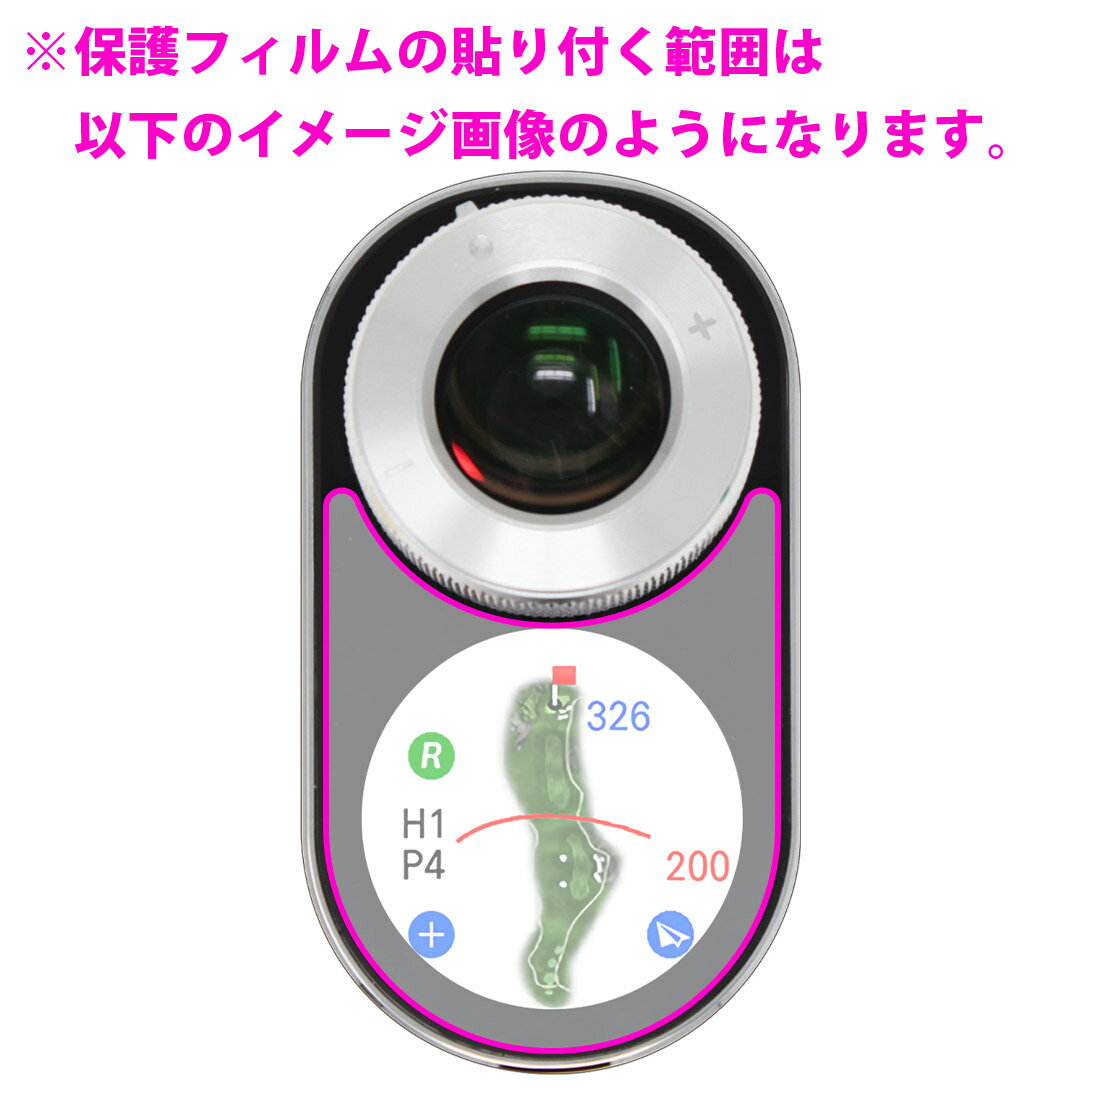 抗菌 抗ウイルス【光沢】保護フィルム Voice Caddie SL2 (ボイスキャディ SL2) 日本製 自社製造直販 3